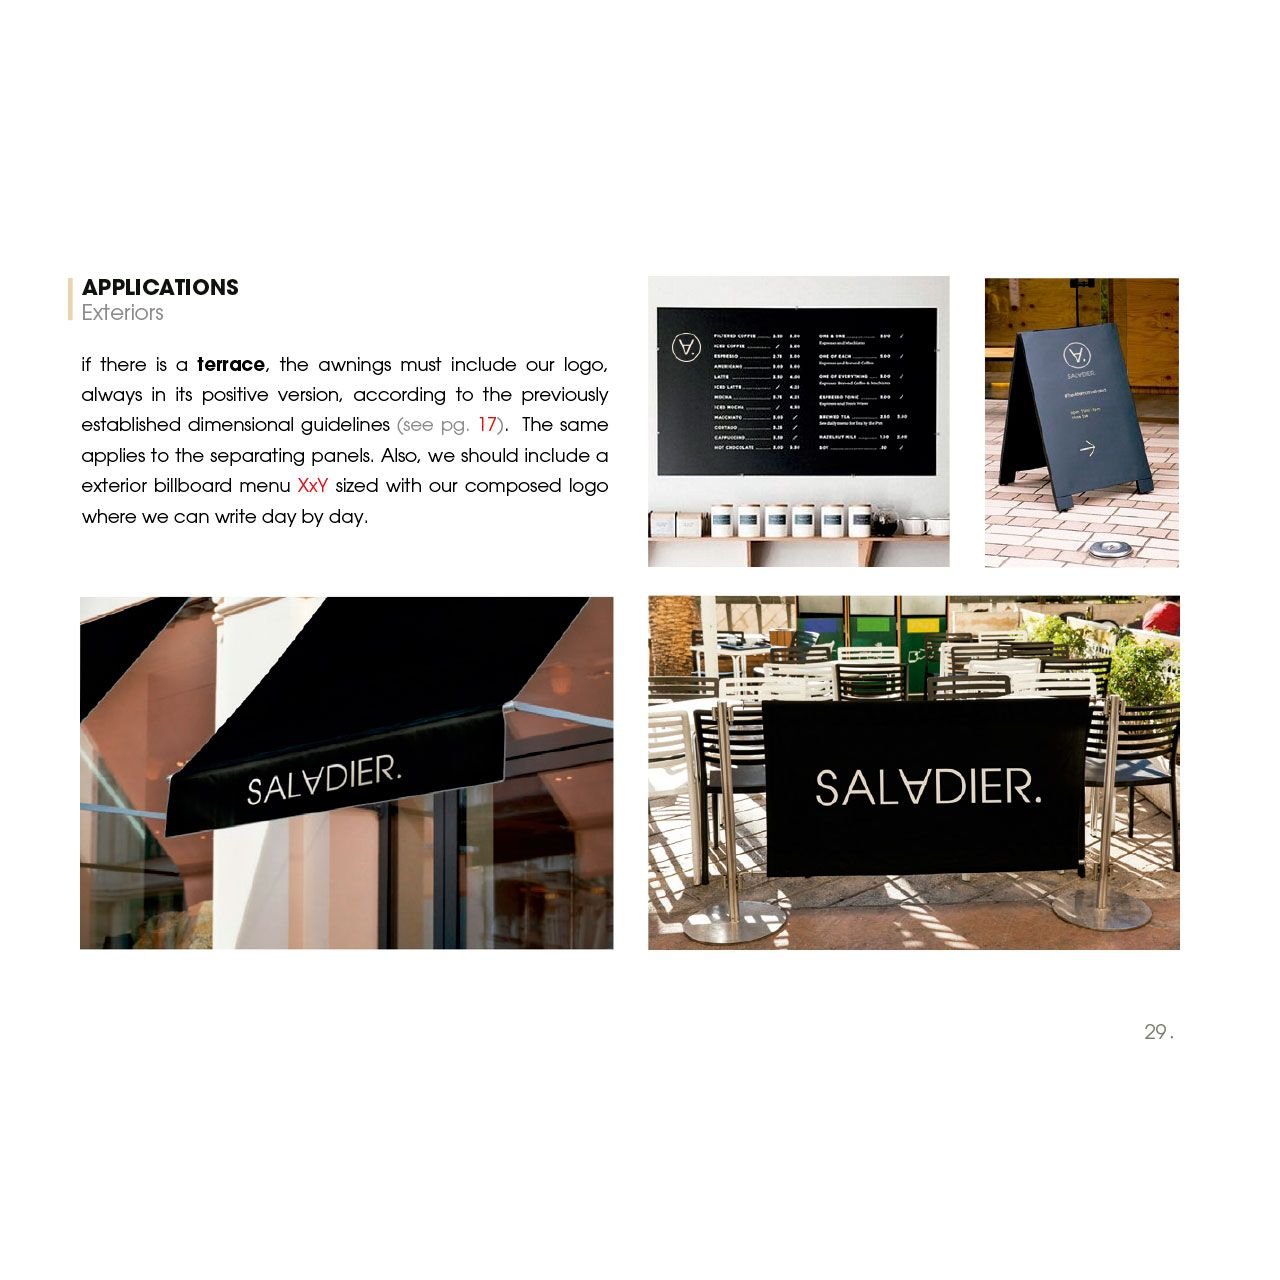 aplicativos de marca identidad en restaurantes restauración